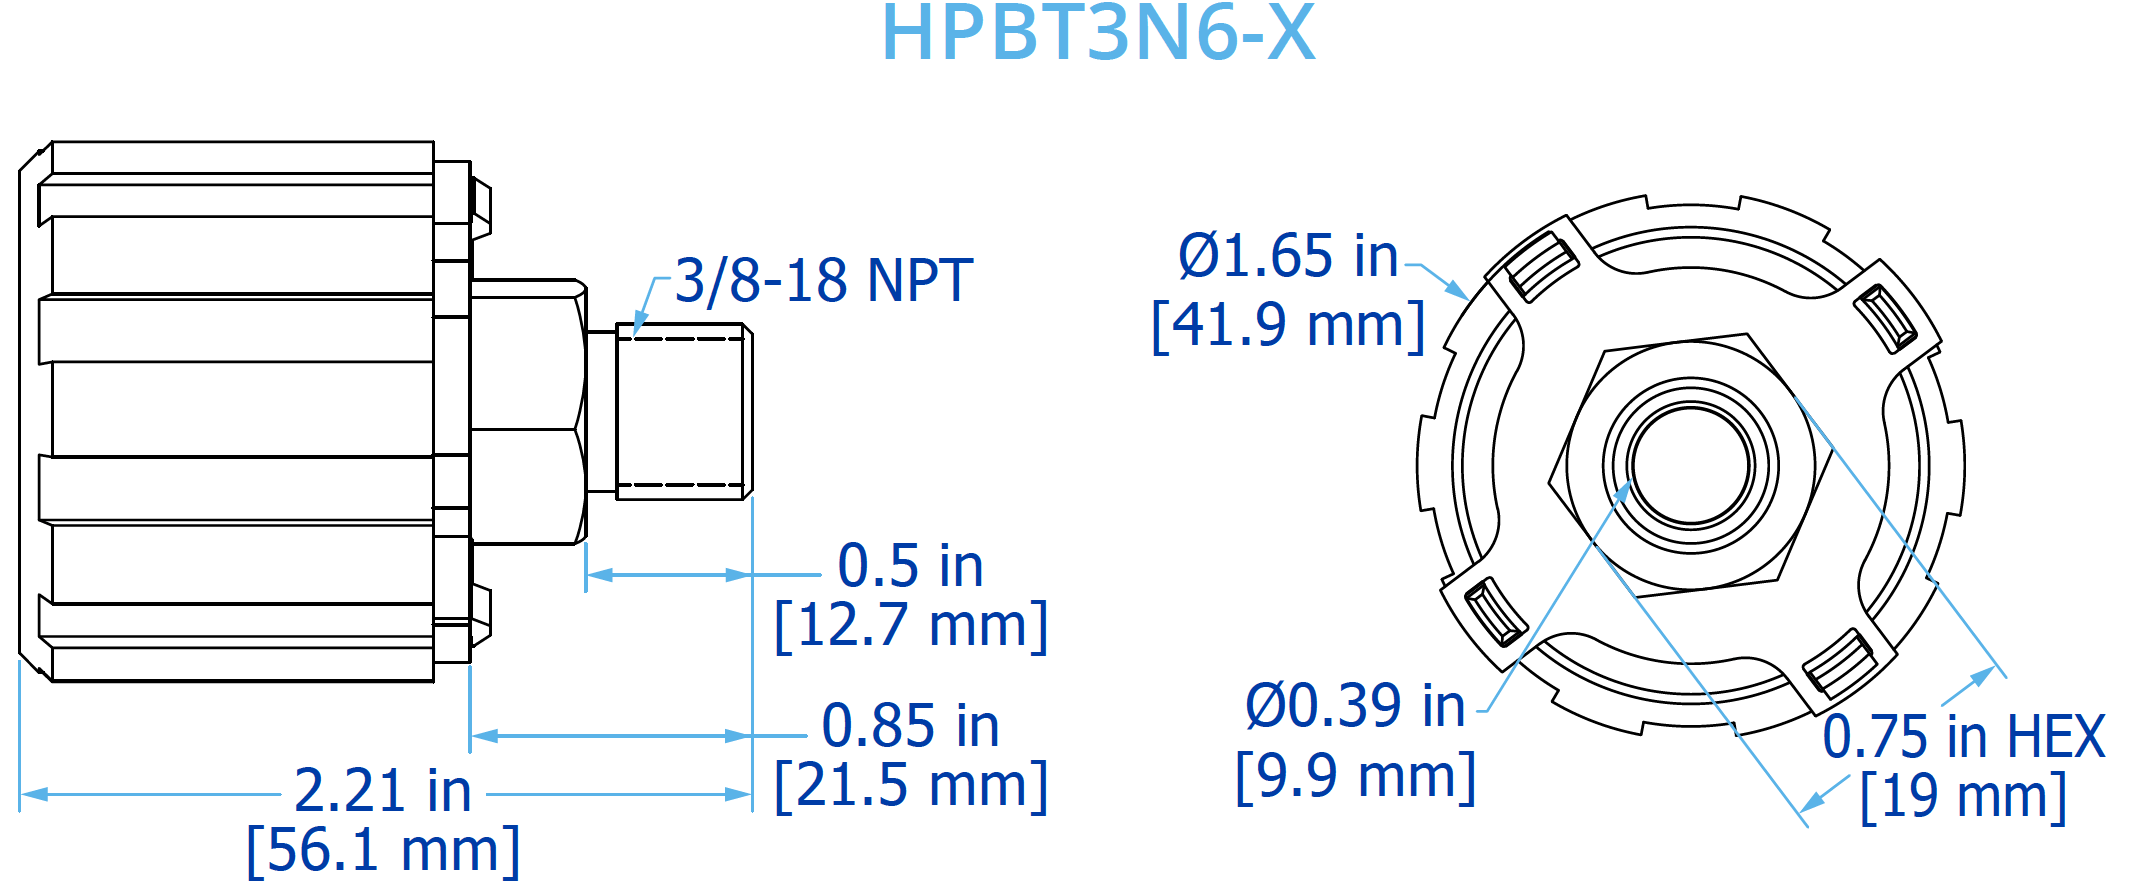 HPBT3N6-X